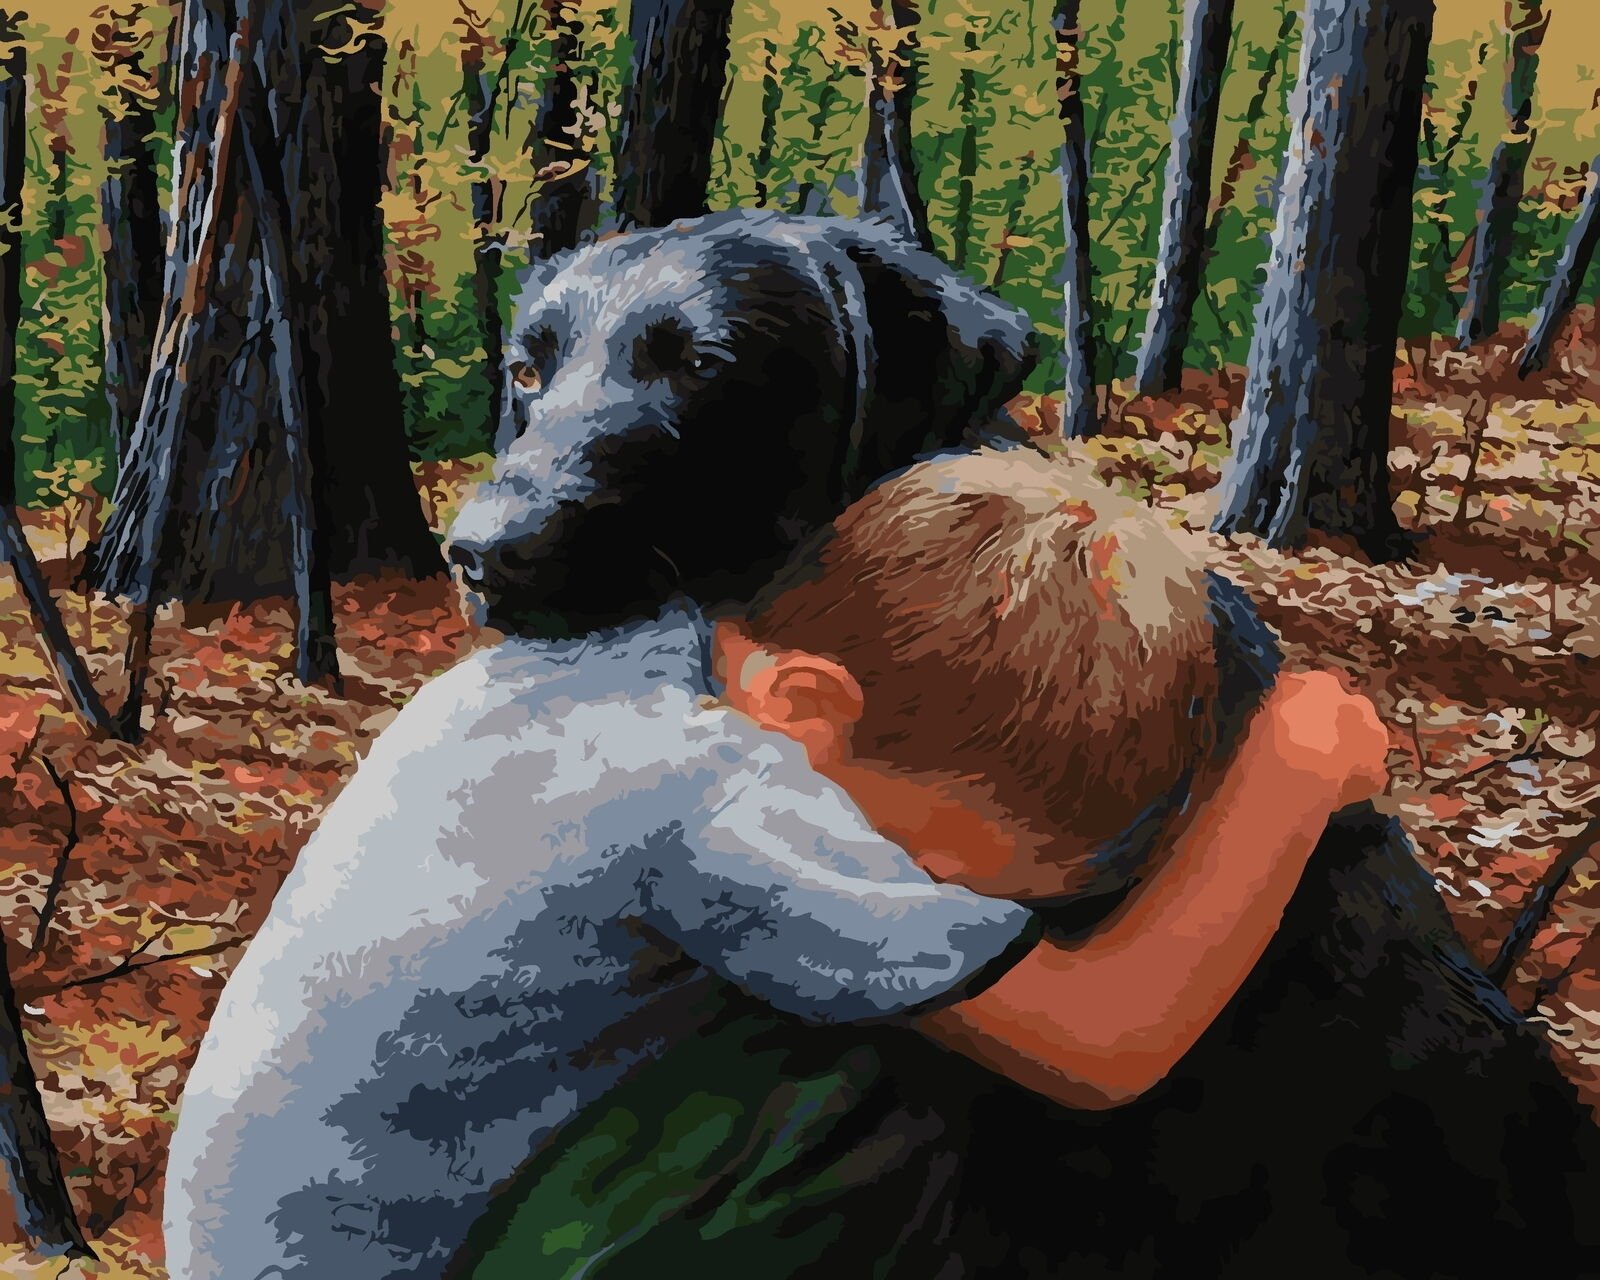 Может быть поможет быть добрее. Собака друг человека. Мальчик с собакой. Животные друзья человека. Картины людей и животных.